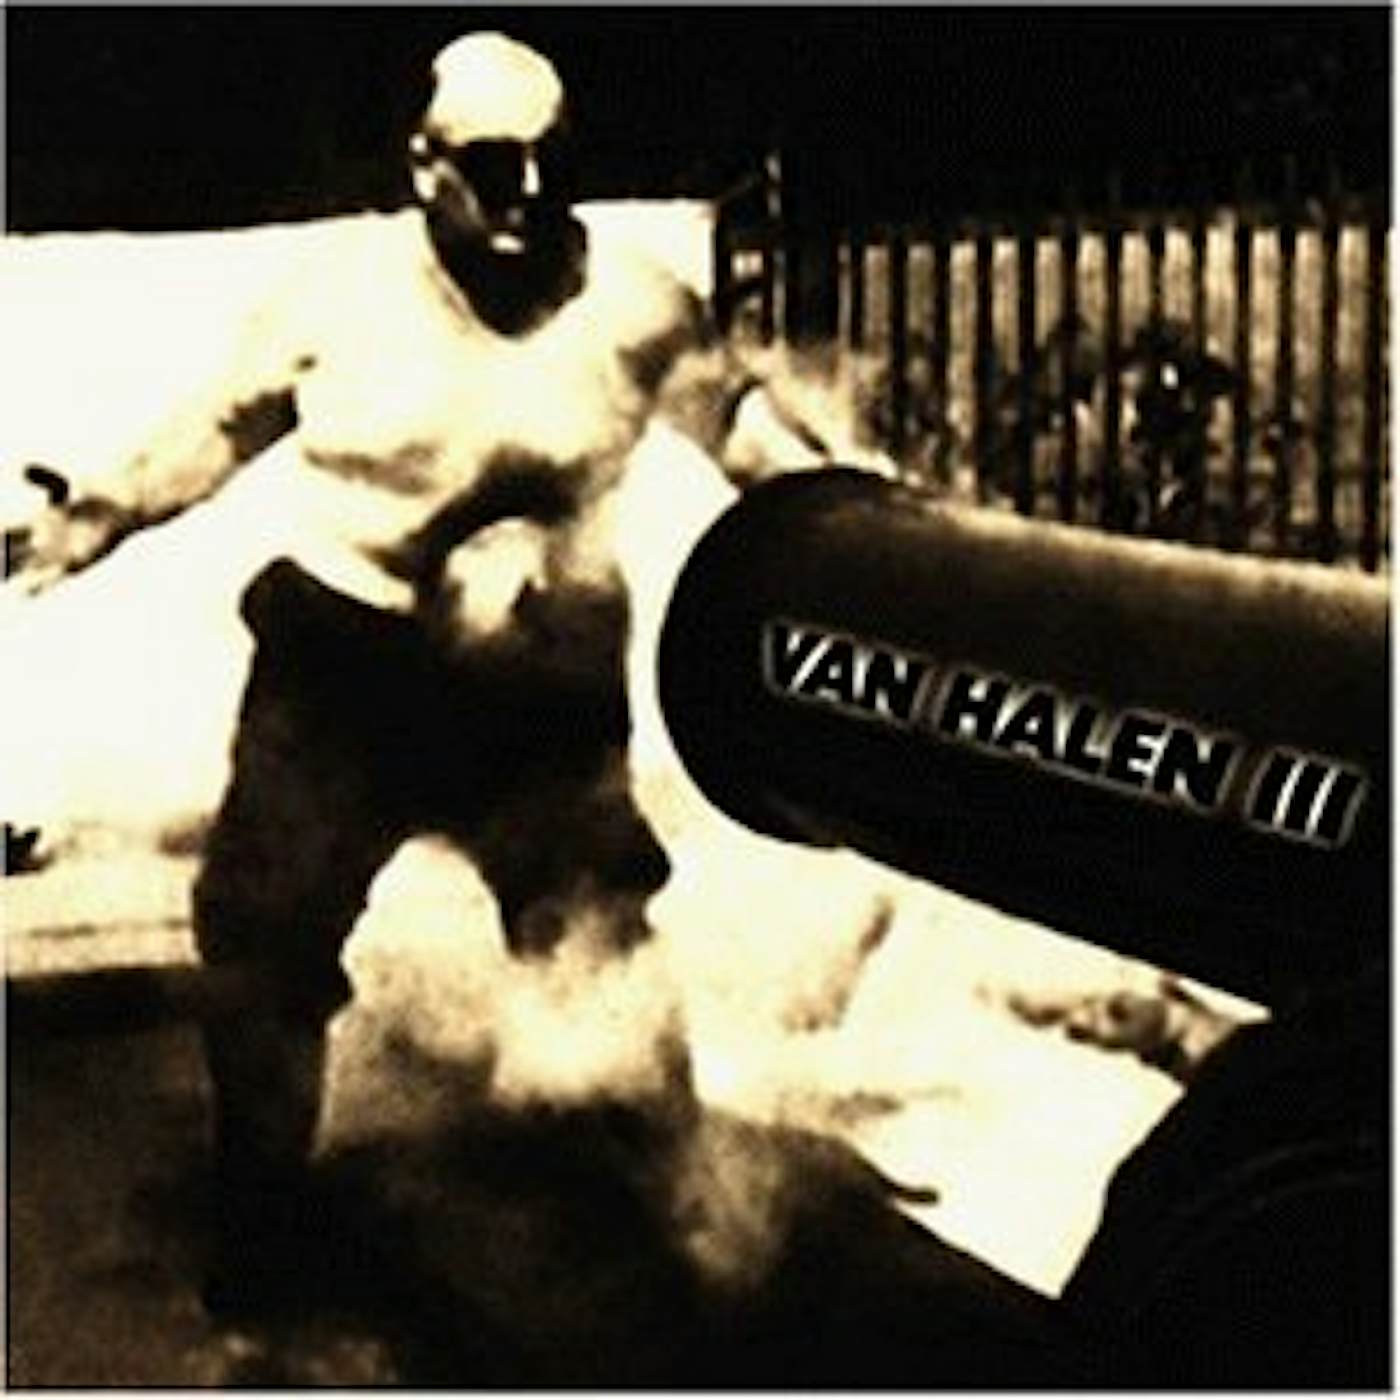 VAN HALEN 3 CD